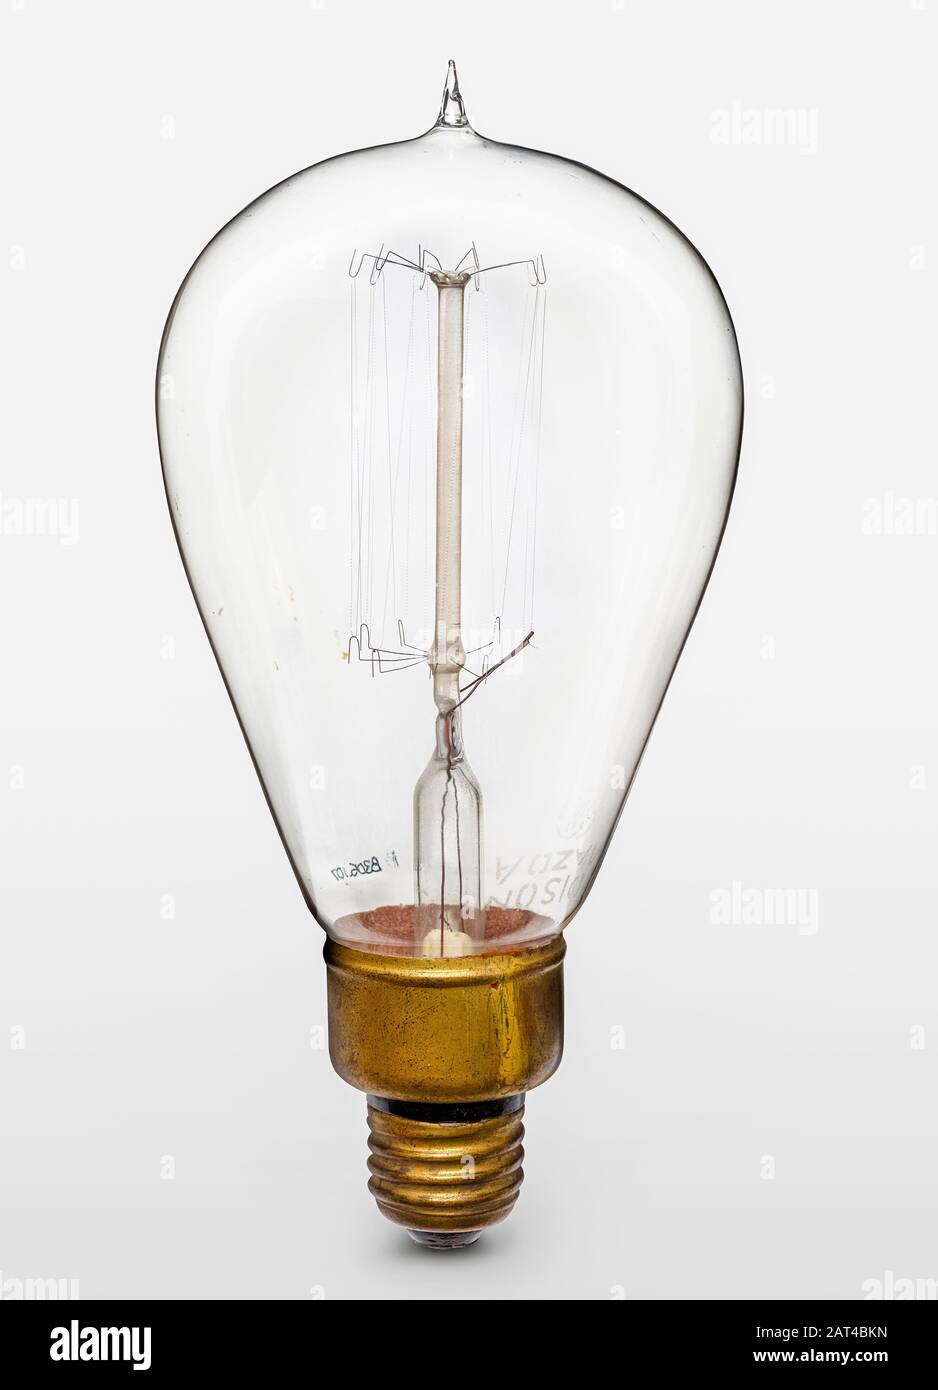 Ampoule Incandescent À Filament De Tungstène Ancien Dessin Du Début Du Xxe Siècle, Photo, 1917 Banque D'Images